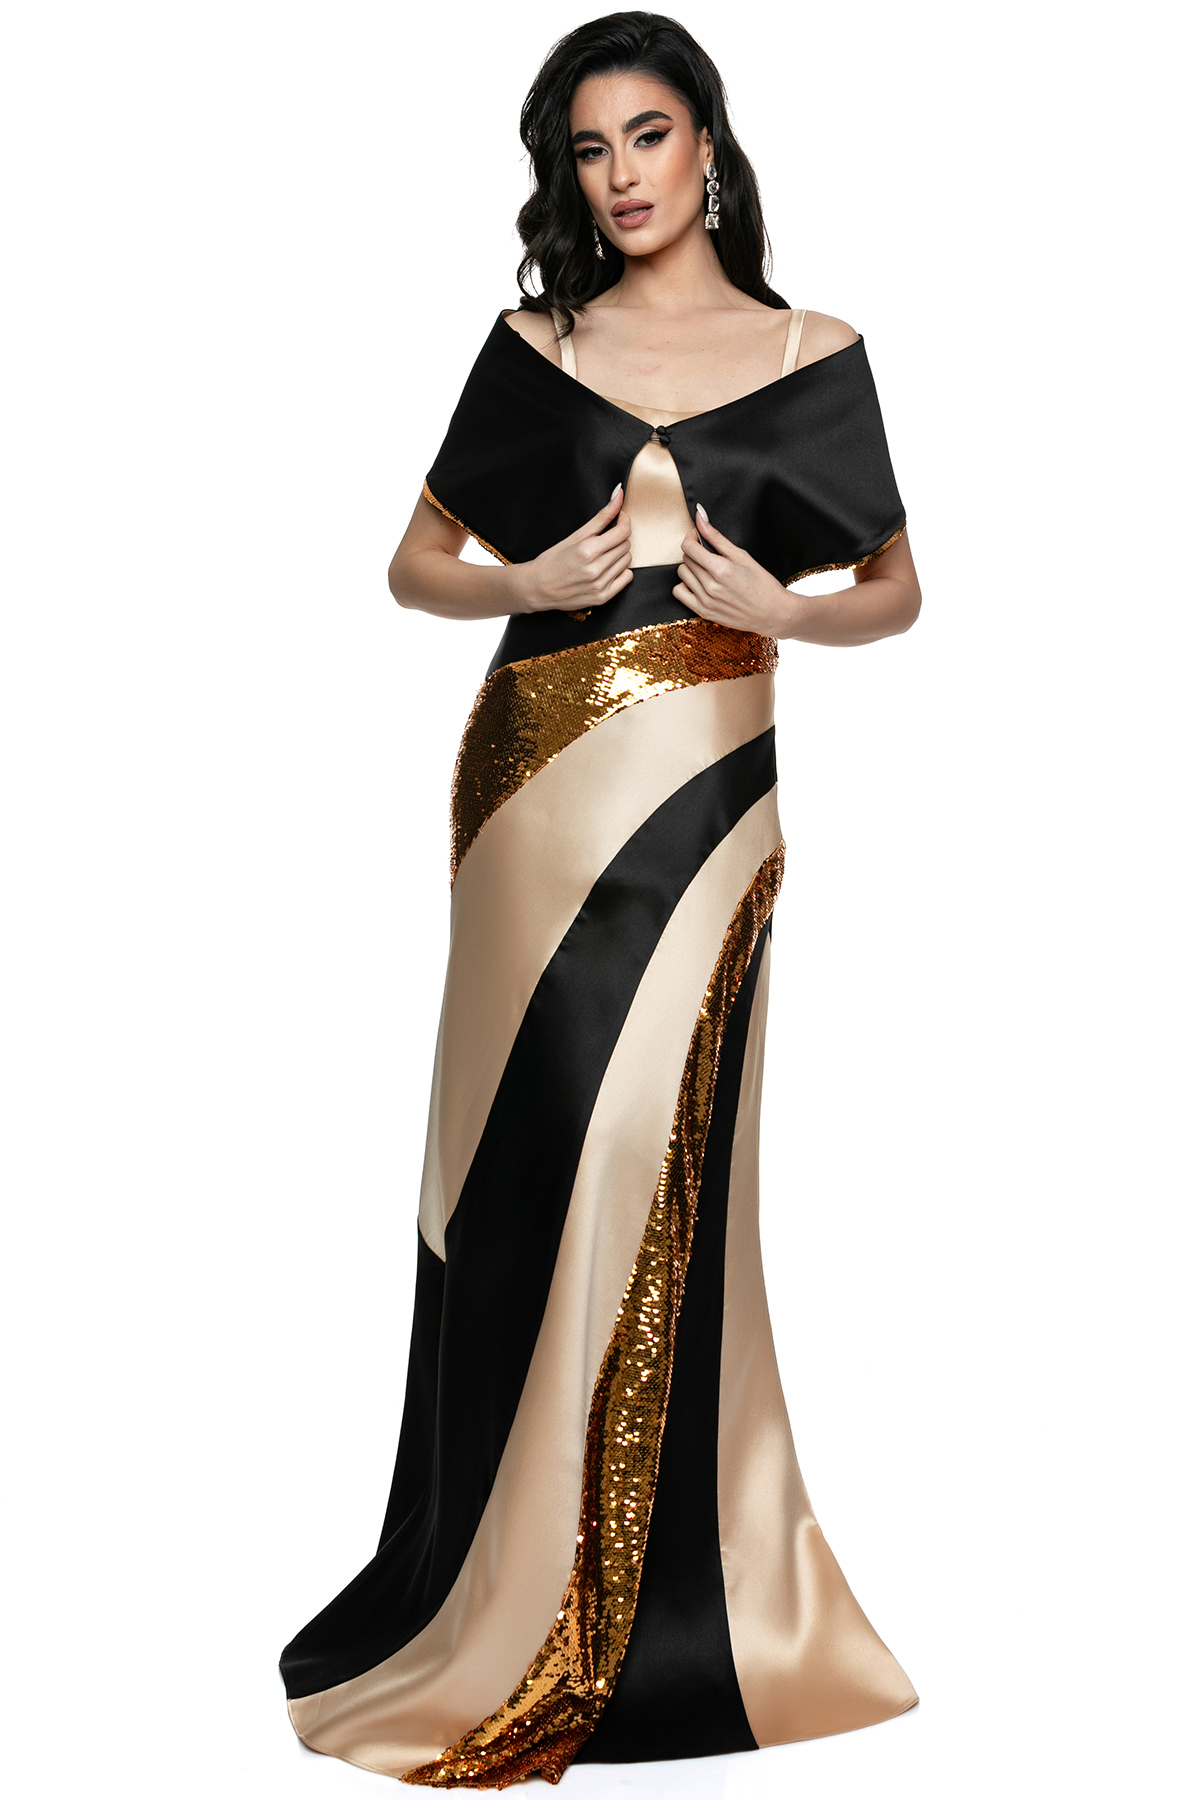 Εντυπωσιακό Στενό Φόρεμα με Χρυσές Λεπτομέρειες και Μαύρες Αντιθέσεις, Συνοδευόμενο από Κάπα Μανίκια